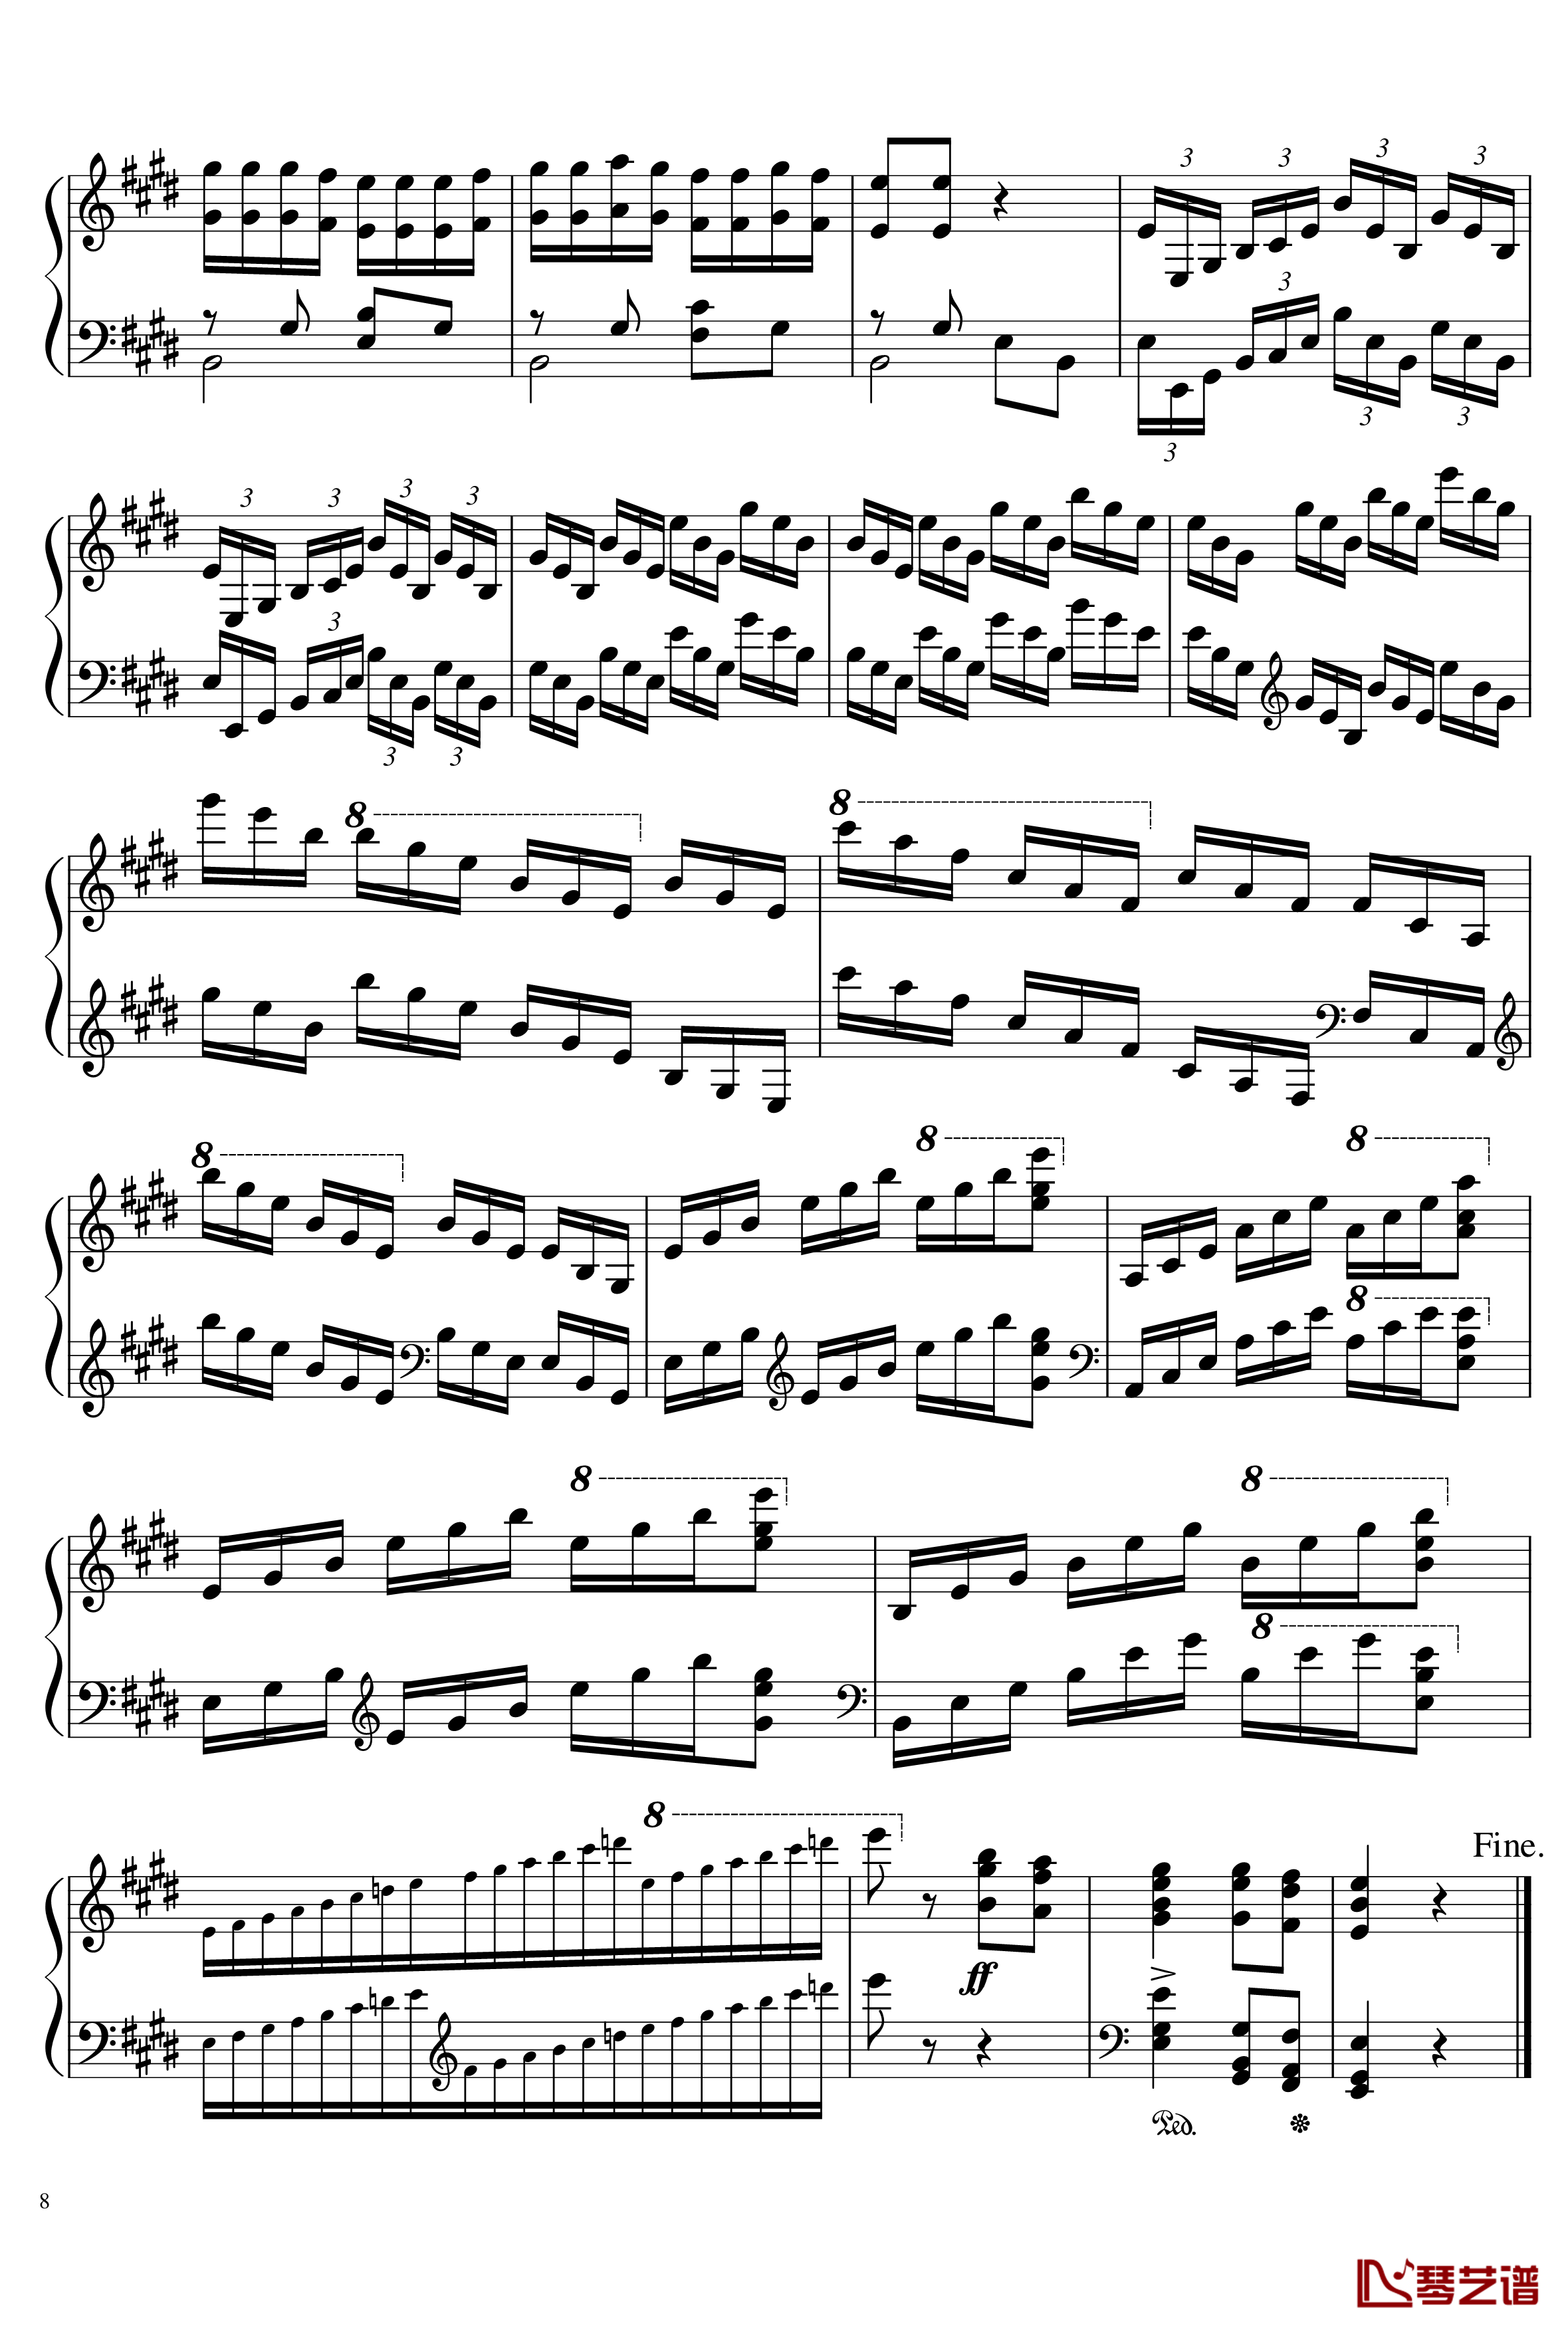 帕格尼尼主题变奏曲钢琴谱-Ice-KUN8